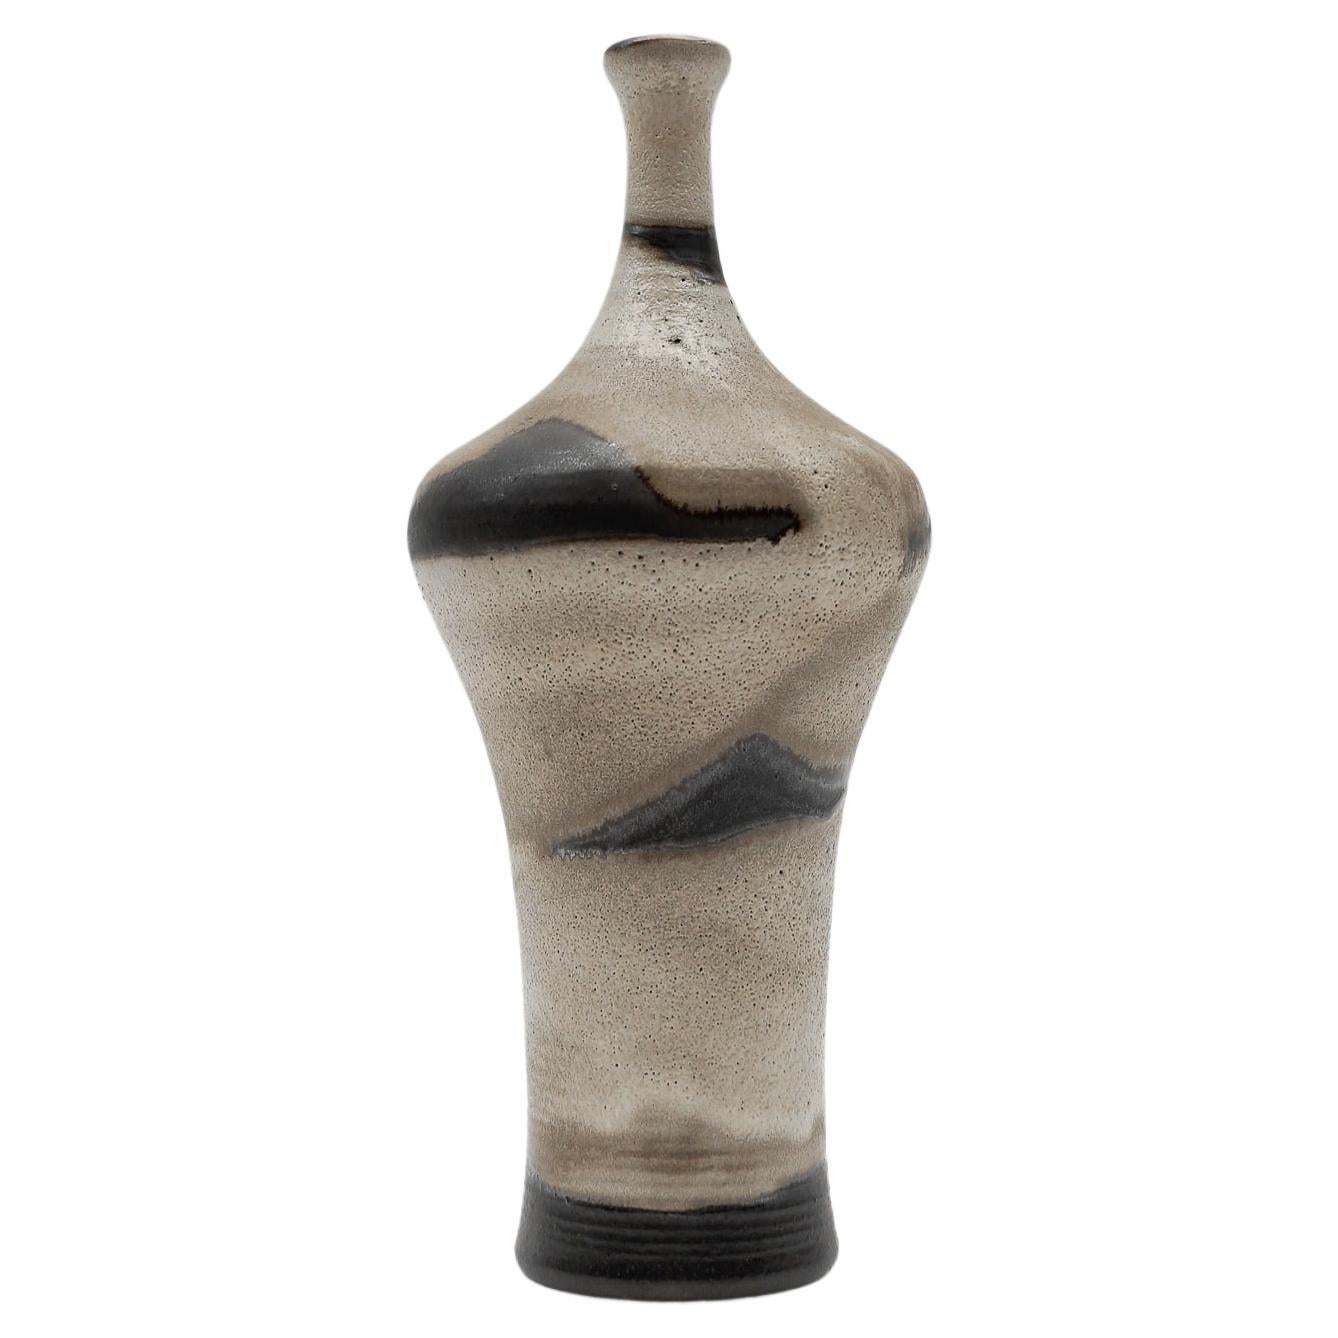 Studio Ceramic Vase von Elly Kuch für Wilhelm & Elly KUCH, 1960er Jahre, Deutschland